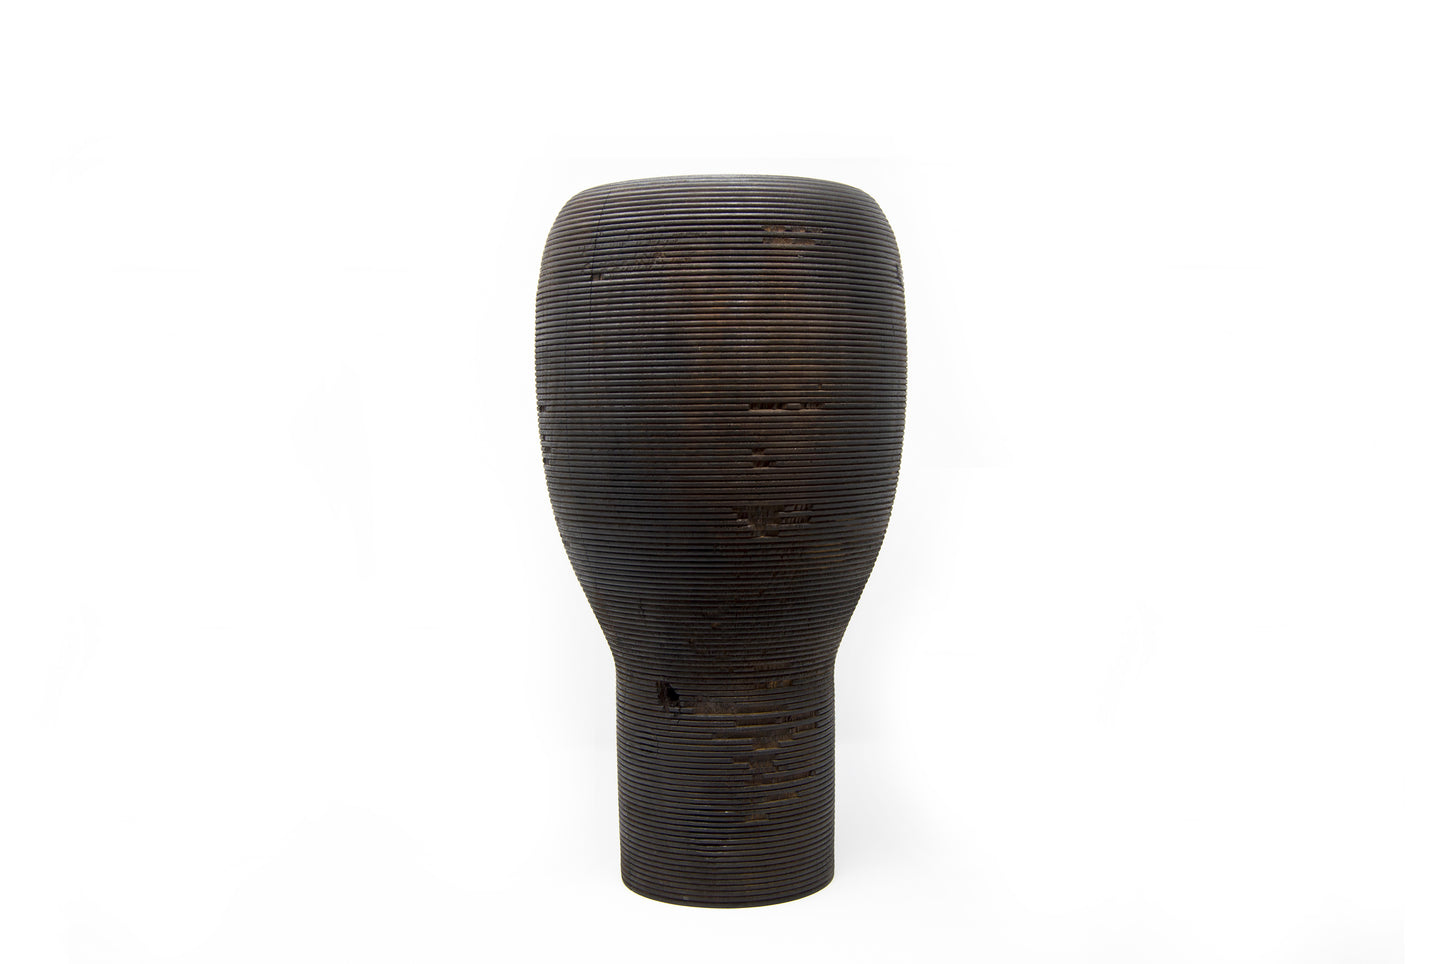 Anni Wooden Vase